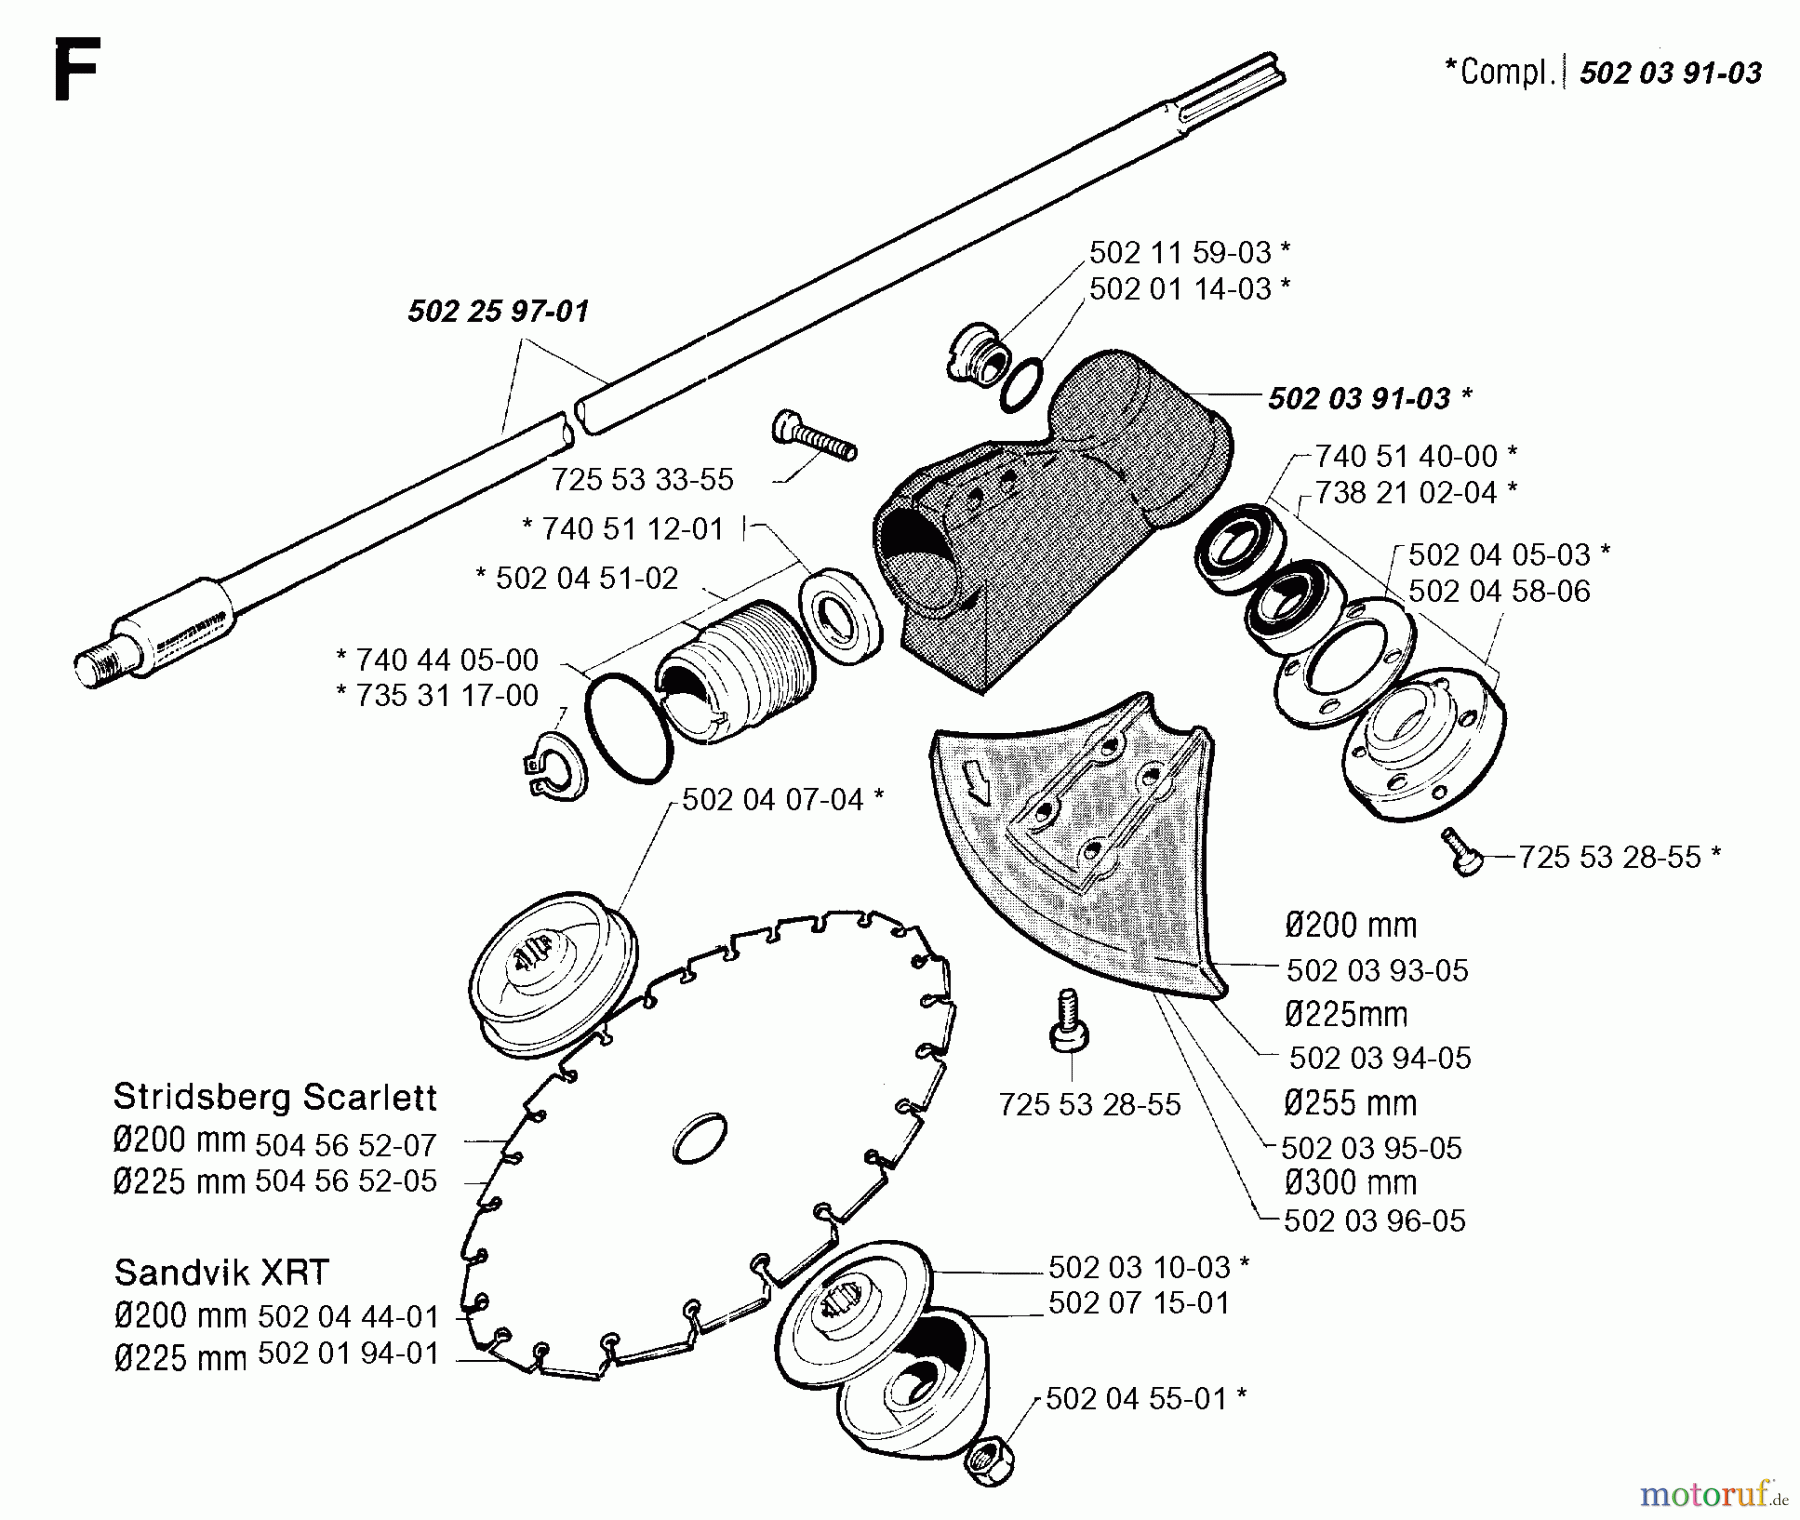  Jonsered Motorsensen, Trimmer RS51 - Jonsered String/Brush Trimmer (1991-09) BEVEL GEAR SHAFT